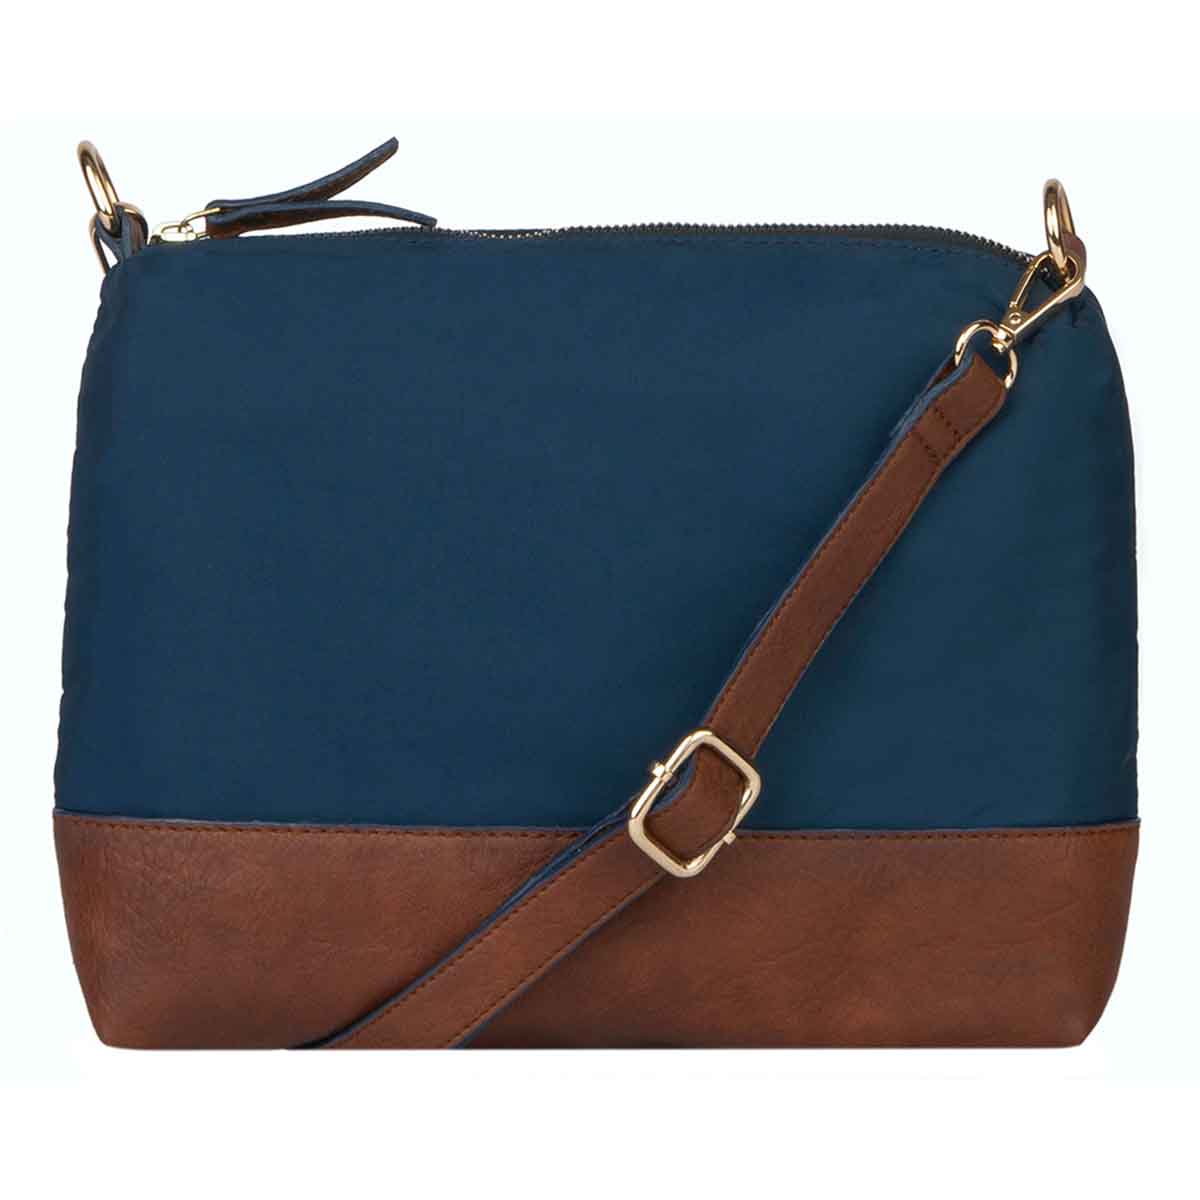 Mona B Handbag for Women | Zipper Tote Bag | Crossbody Sling Bag for Grocery, Shopping, Travel | Shoulder Bags for Women: Set of 2 (NAVY)